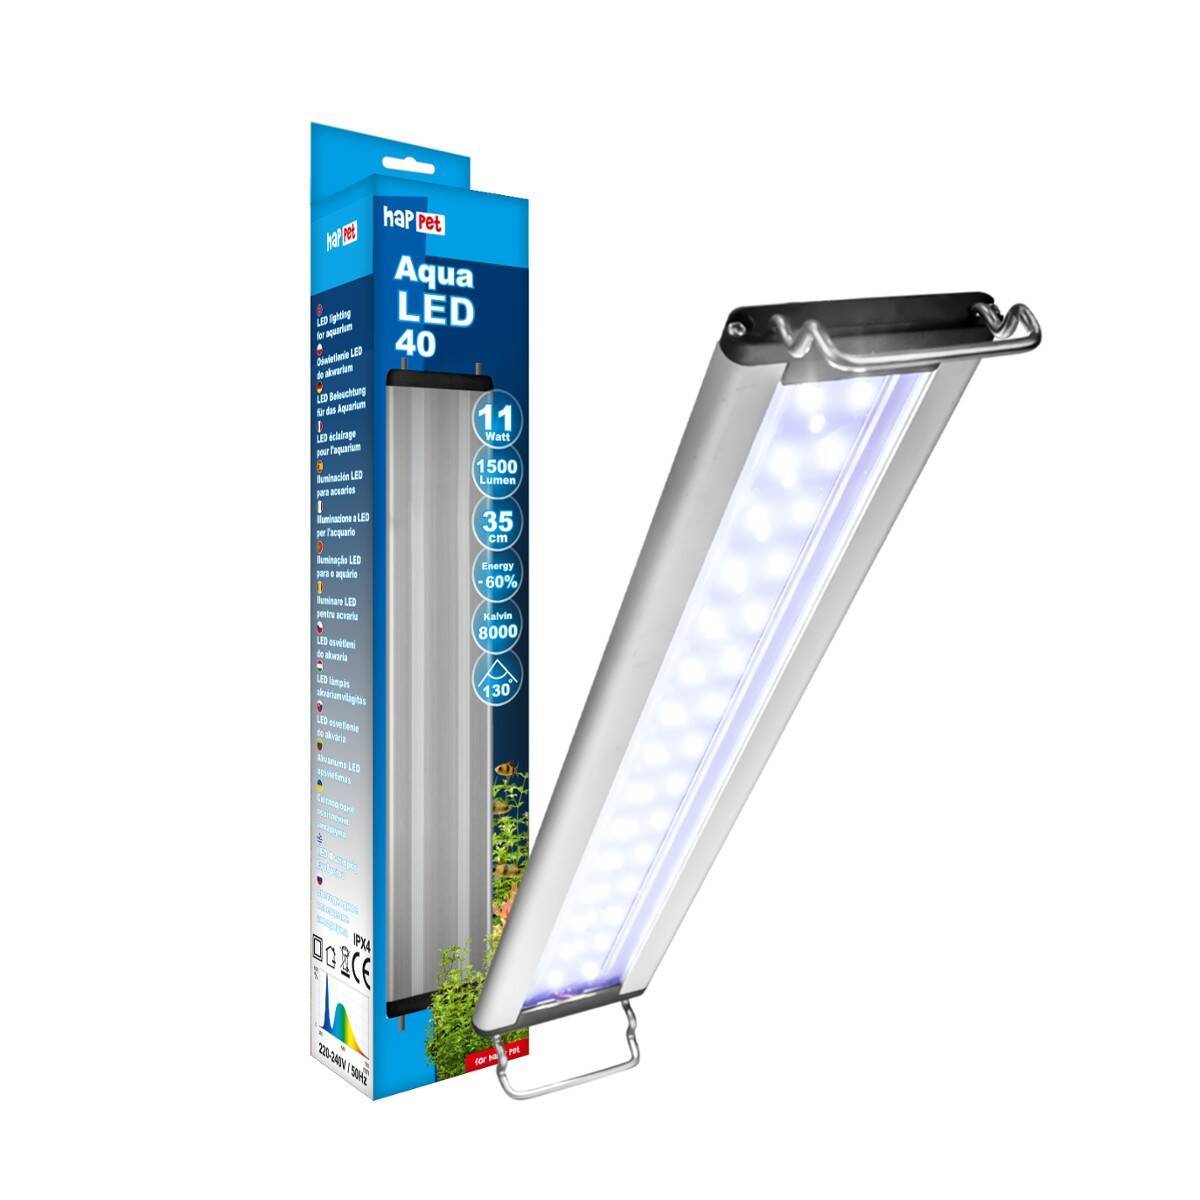 Aqua LED-Lampe 14W Happet LB18 14W/46cm (S-LB18JW)